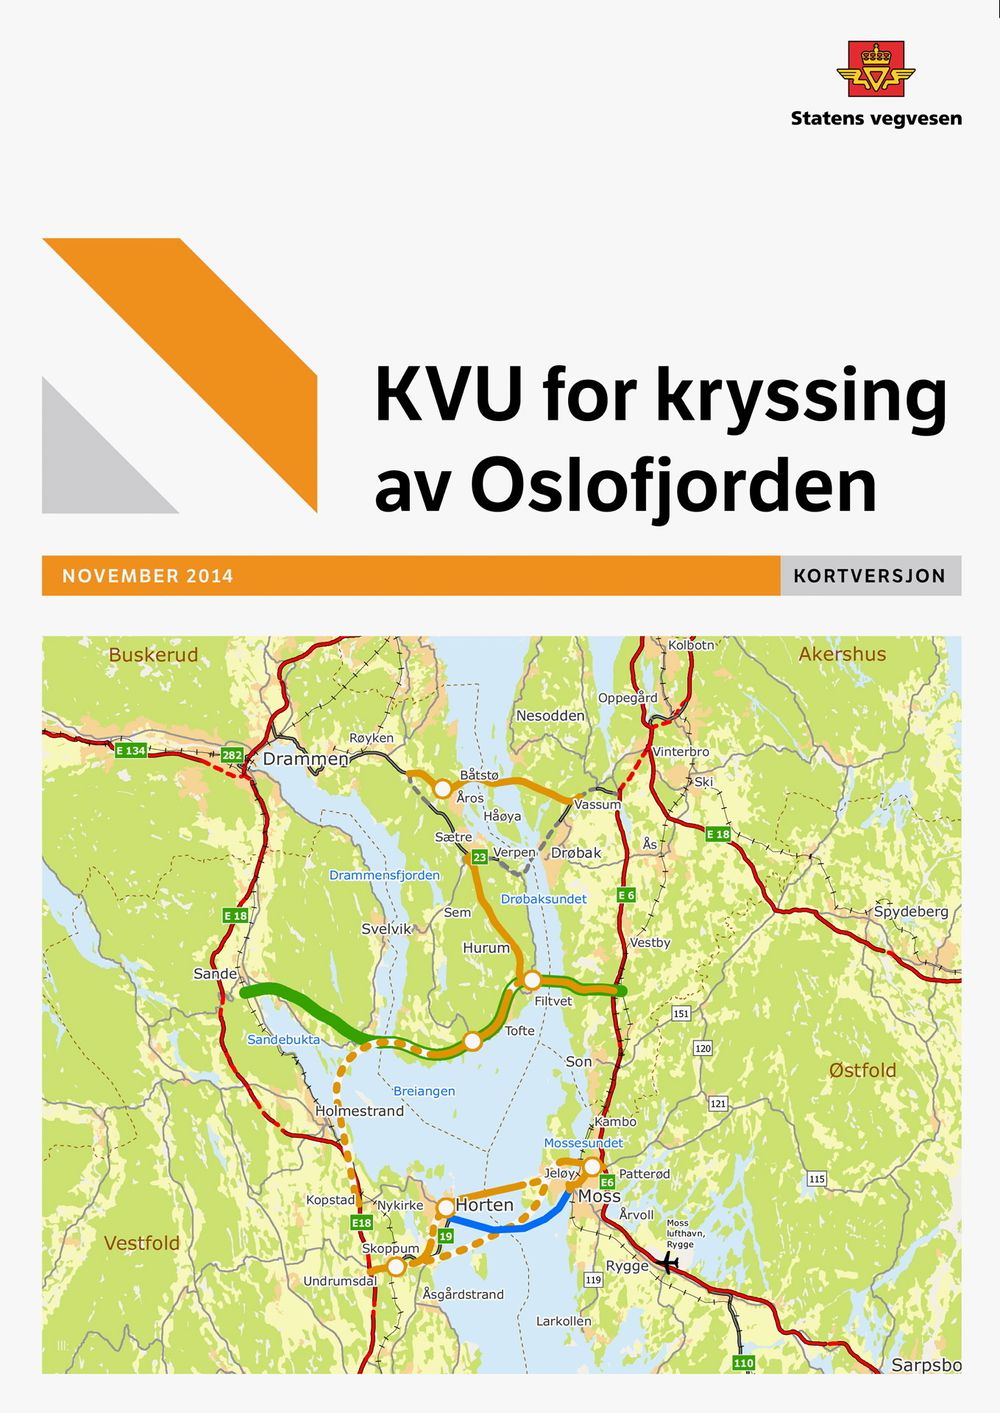 KVU for kryssing av Oslofjorden, november 2014